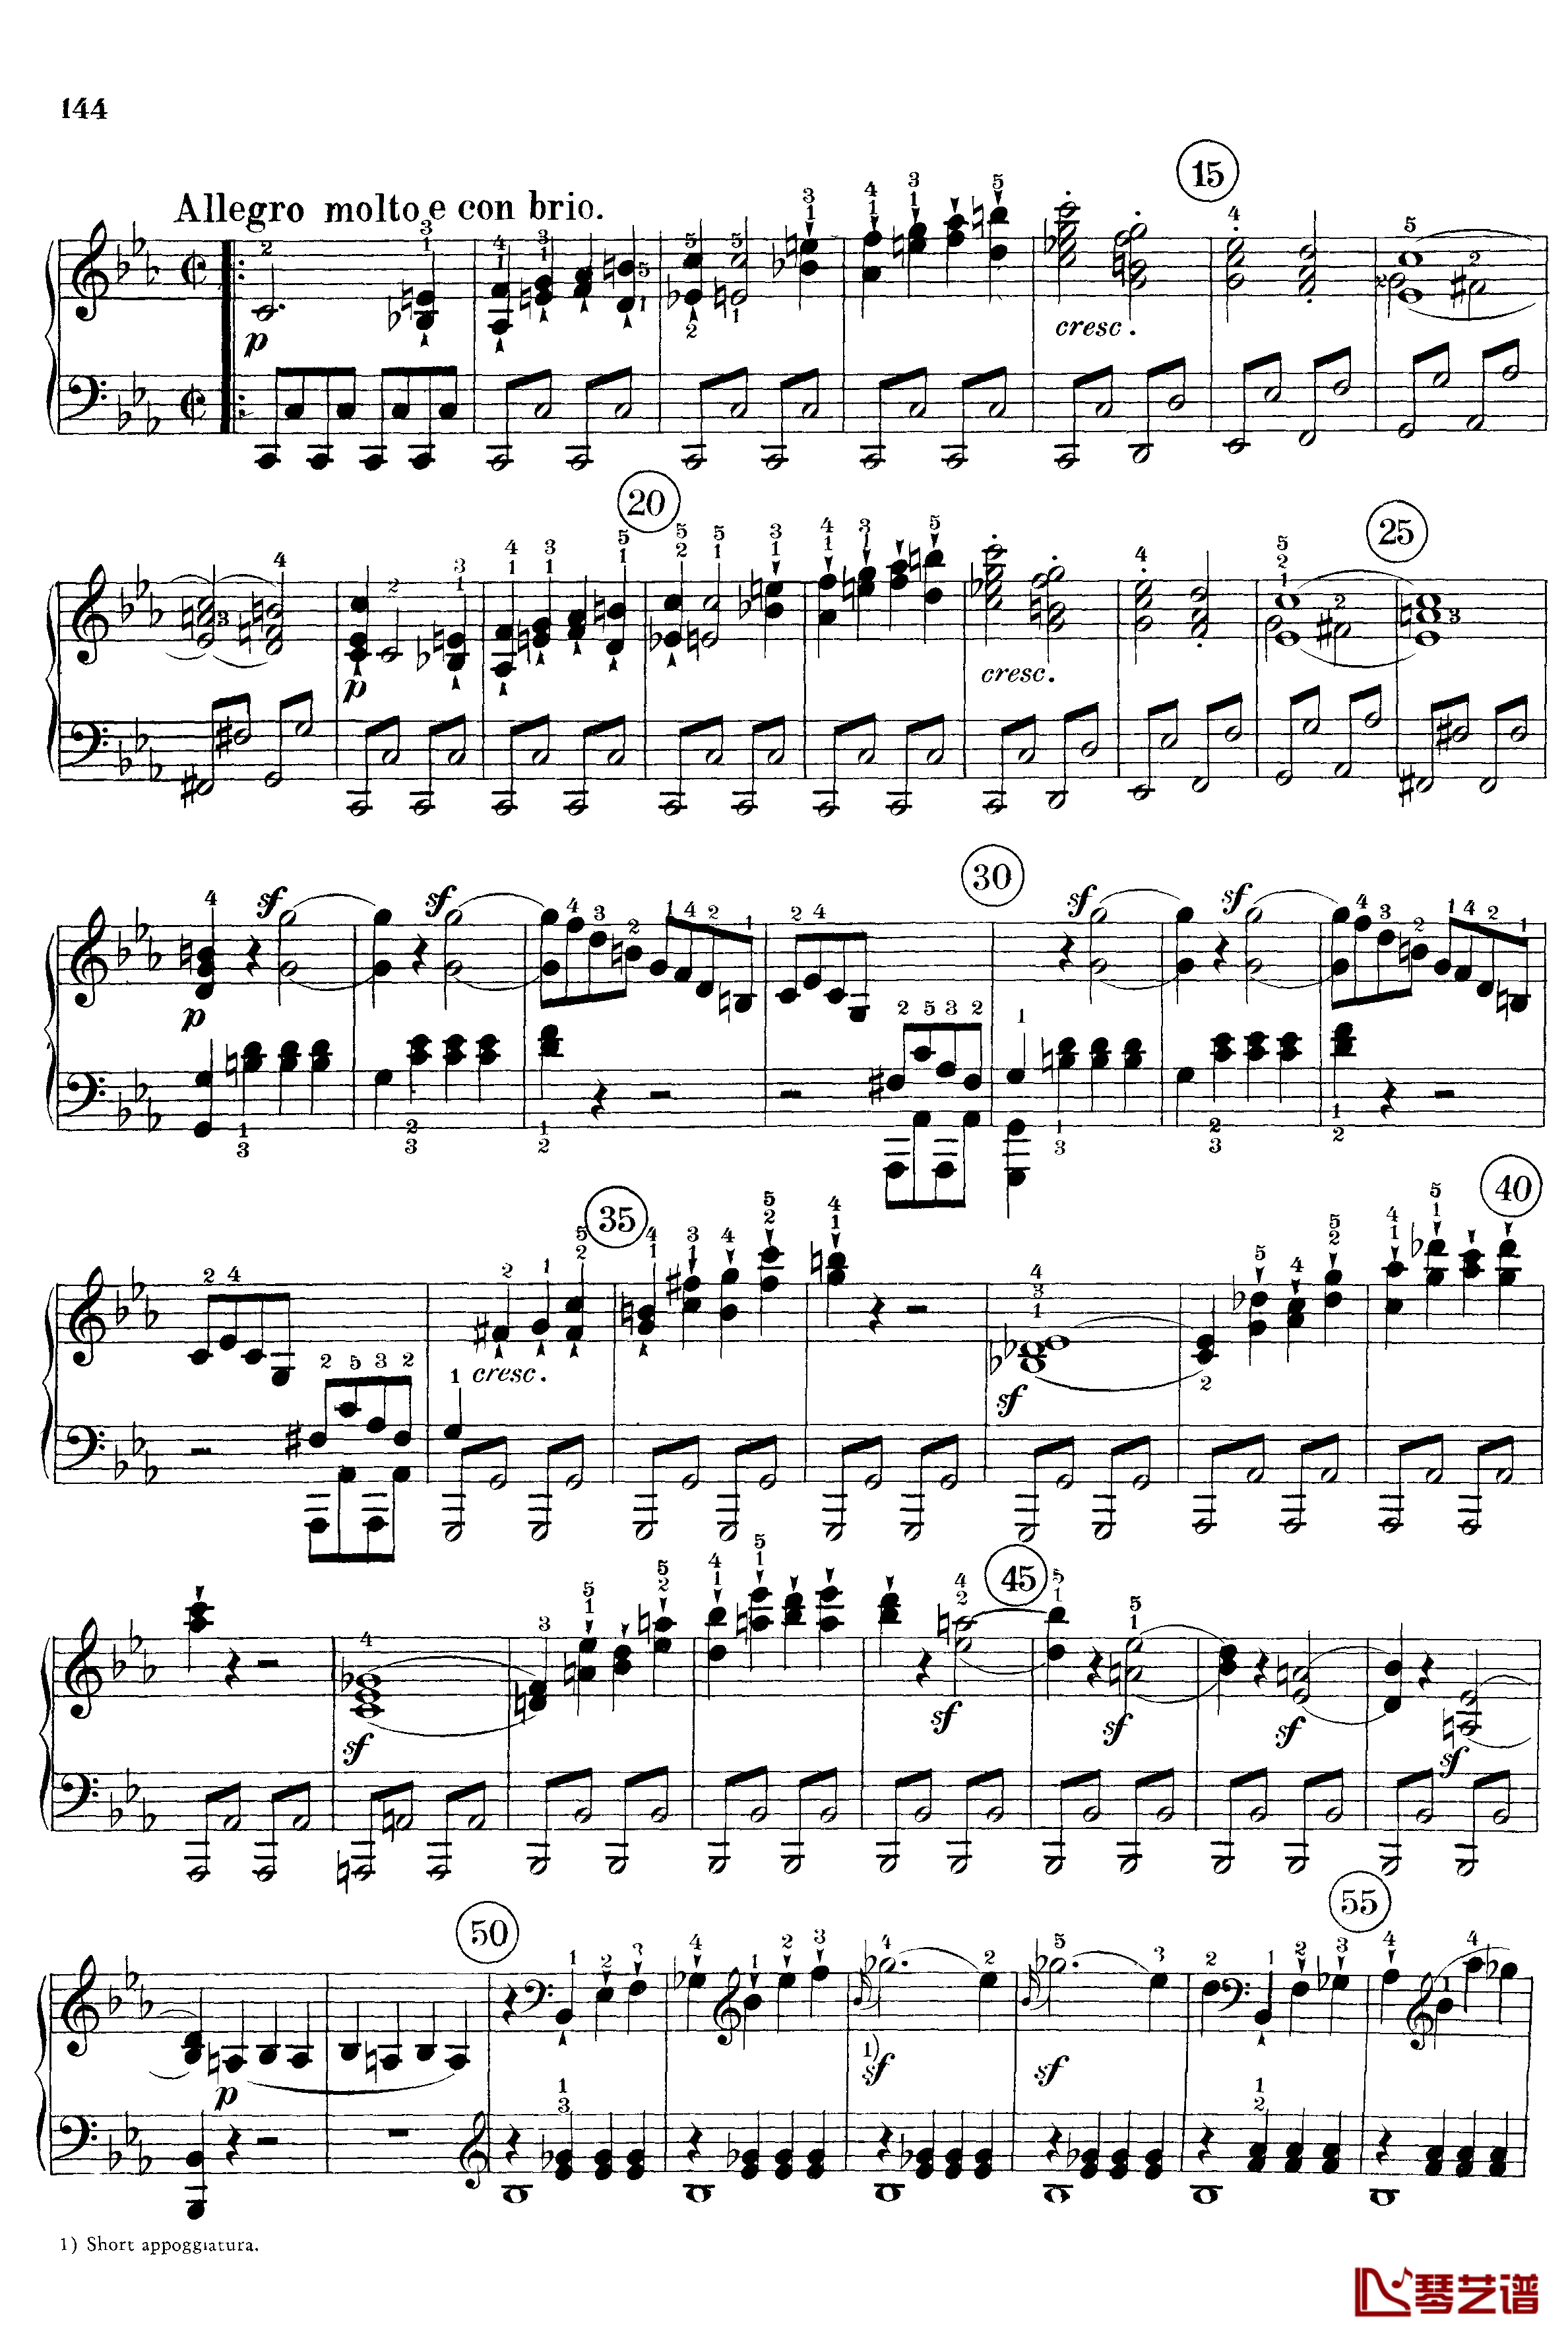 悲怆钢琴谱-c小调第八号钢琴奏鸣曲-全乐章-带指法版-贝多芬-beethoven2